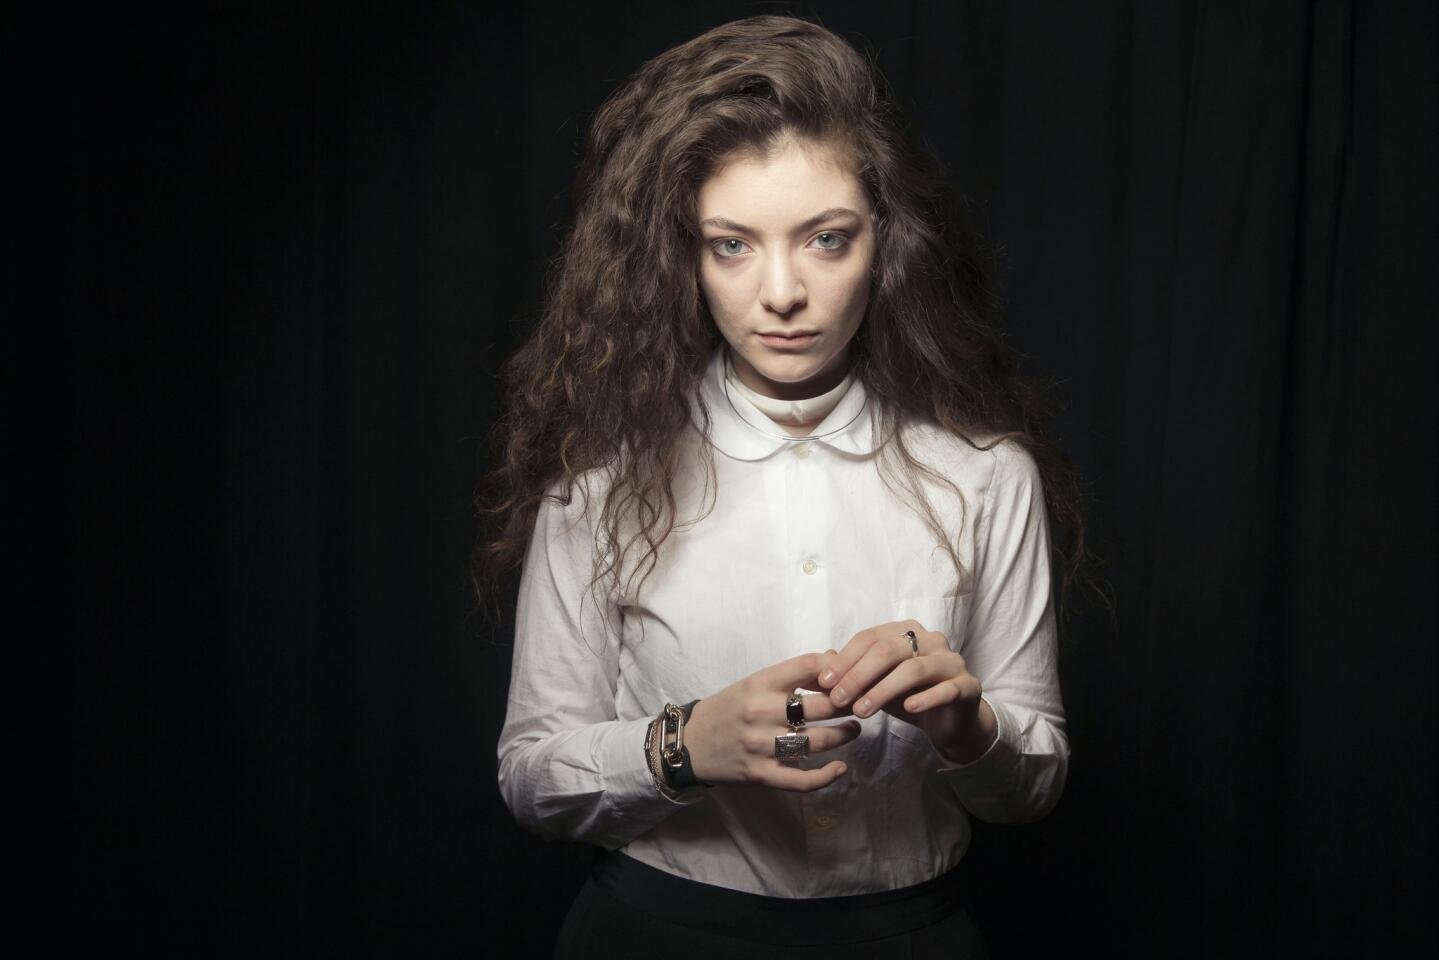 Lorde gets cyberbullied for having an Asian boyfriend